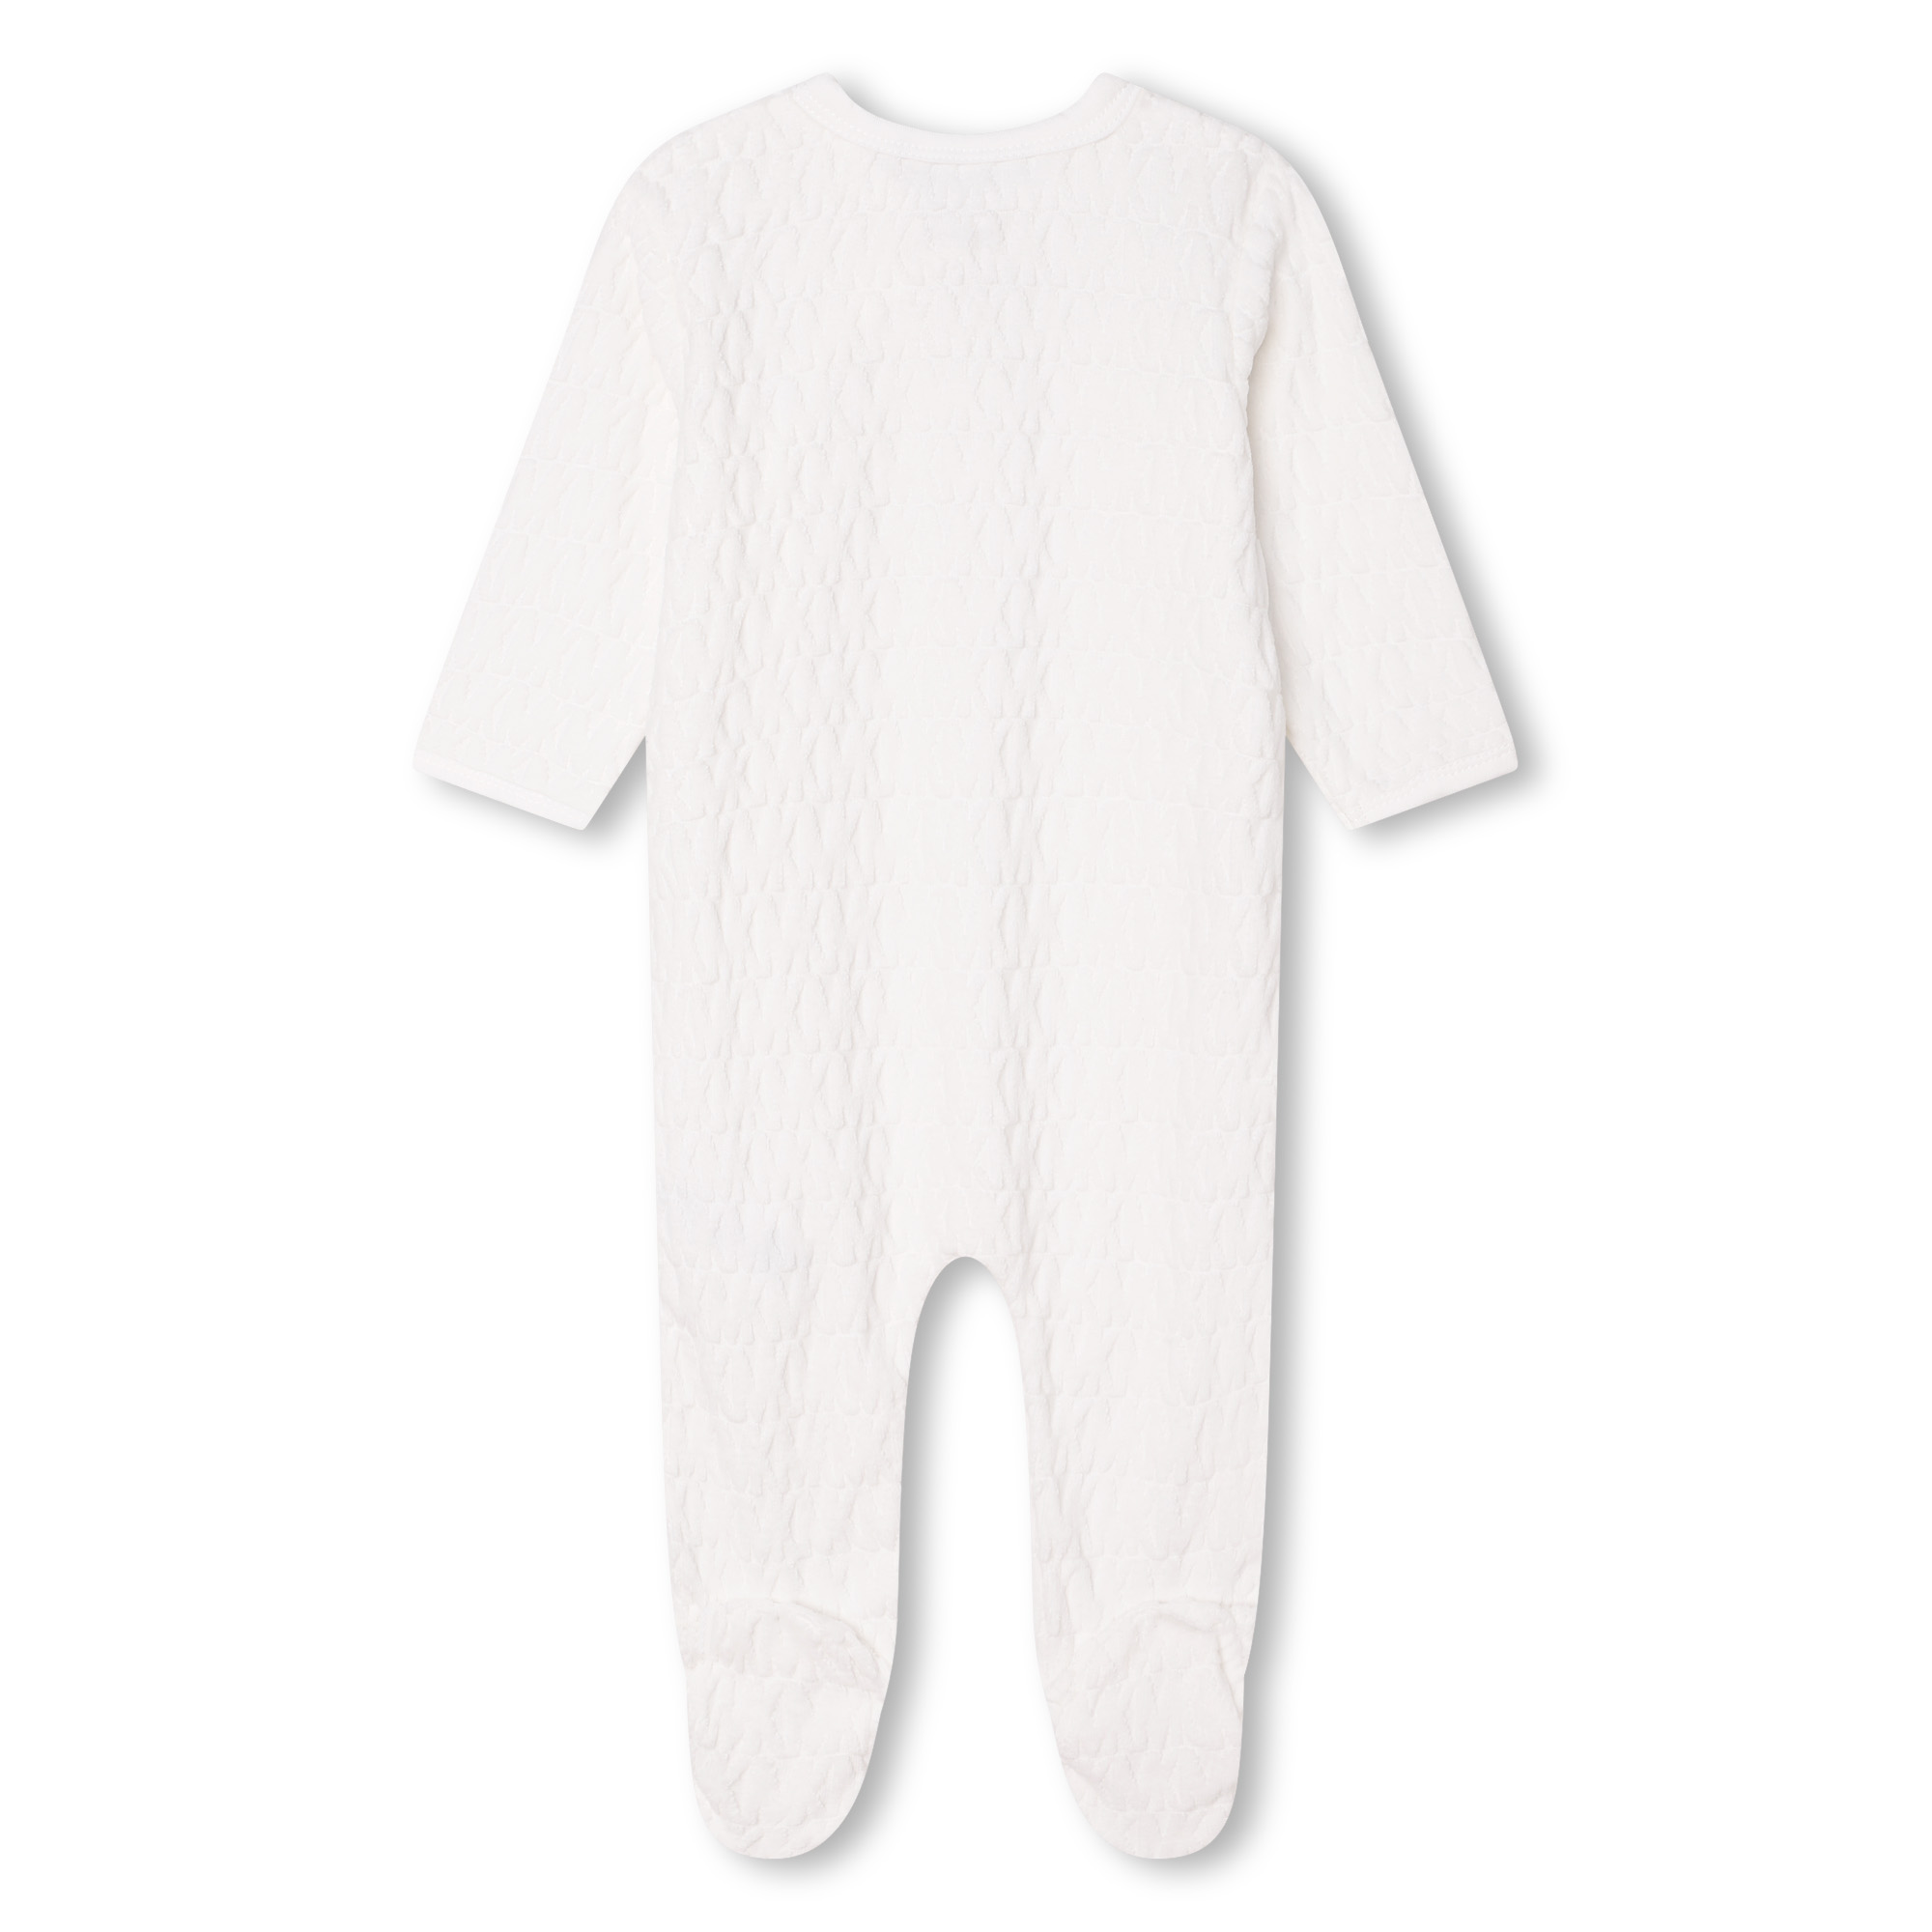 Matching pyjamas and hat set MICHAEL KORS for GIRL